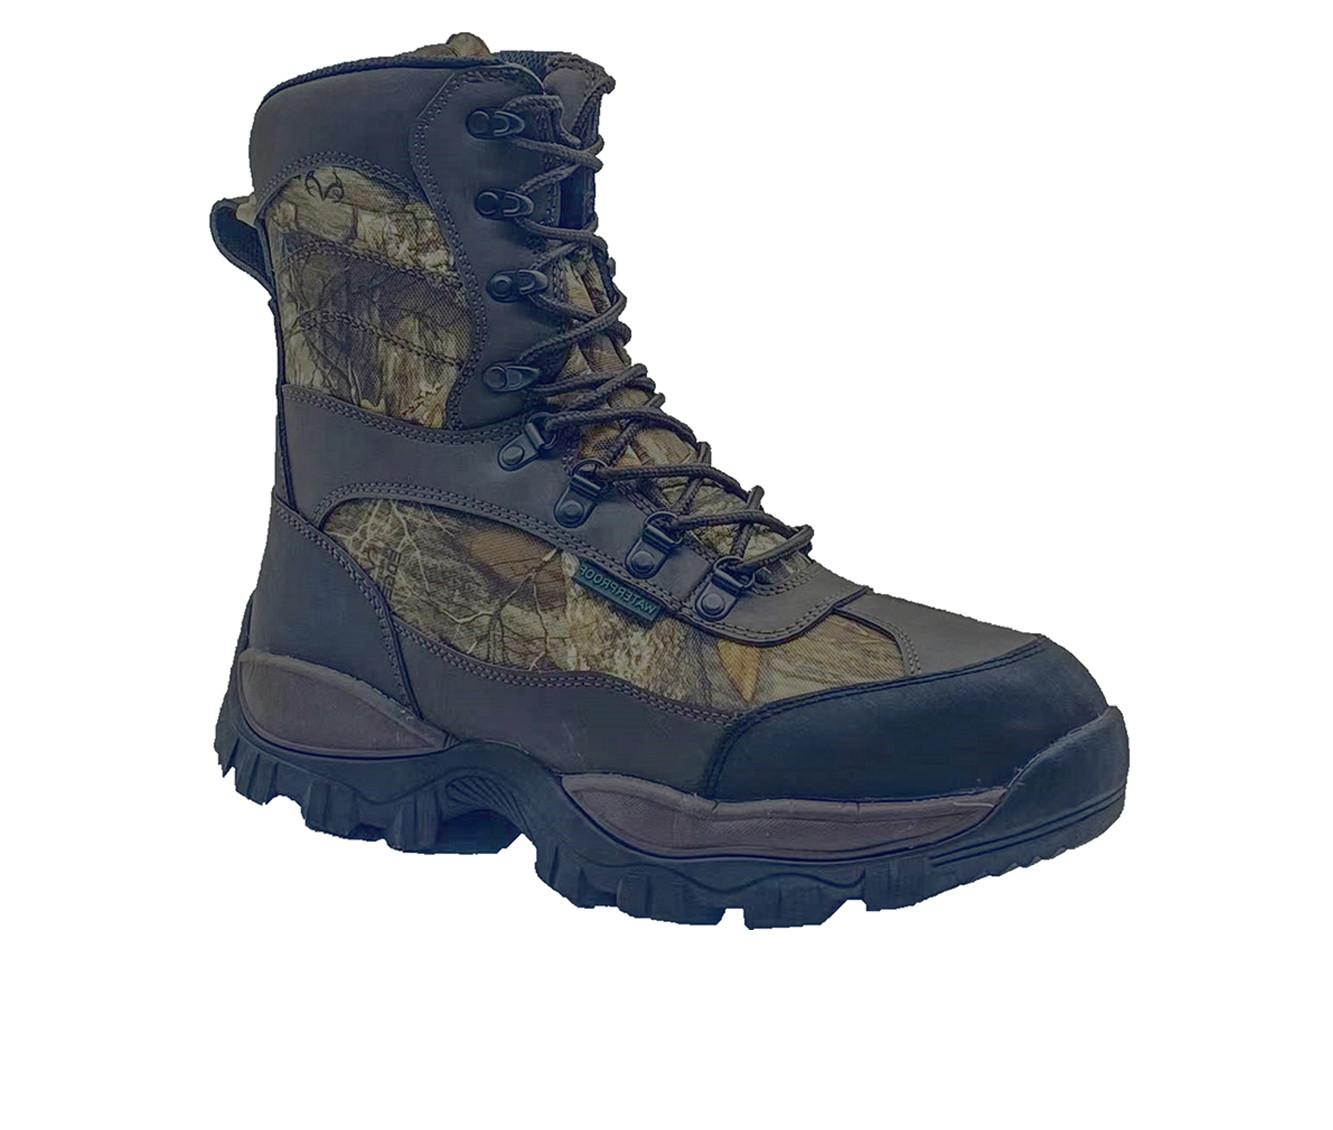 Men's AdTec 10" 800g Hunting Boot